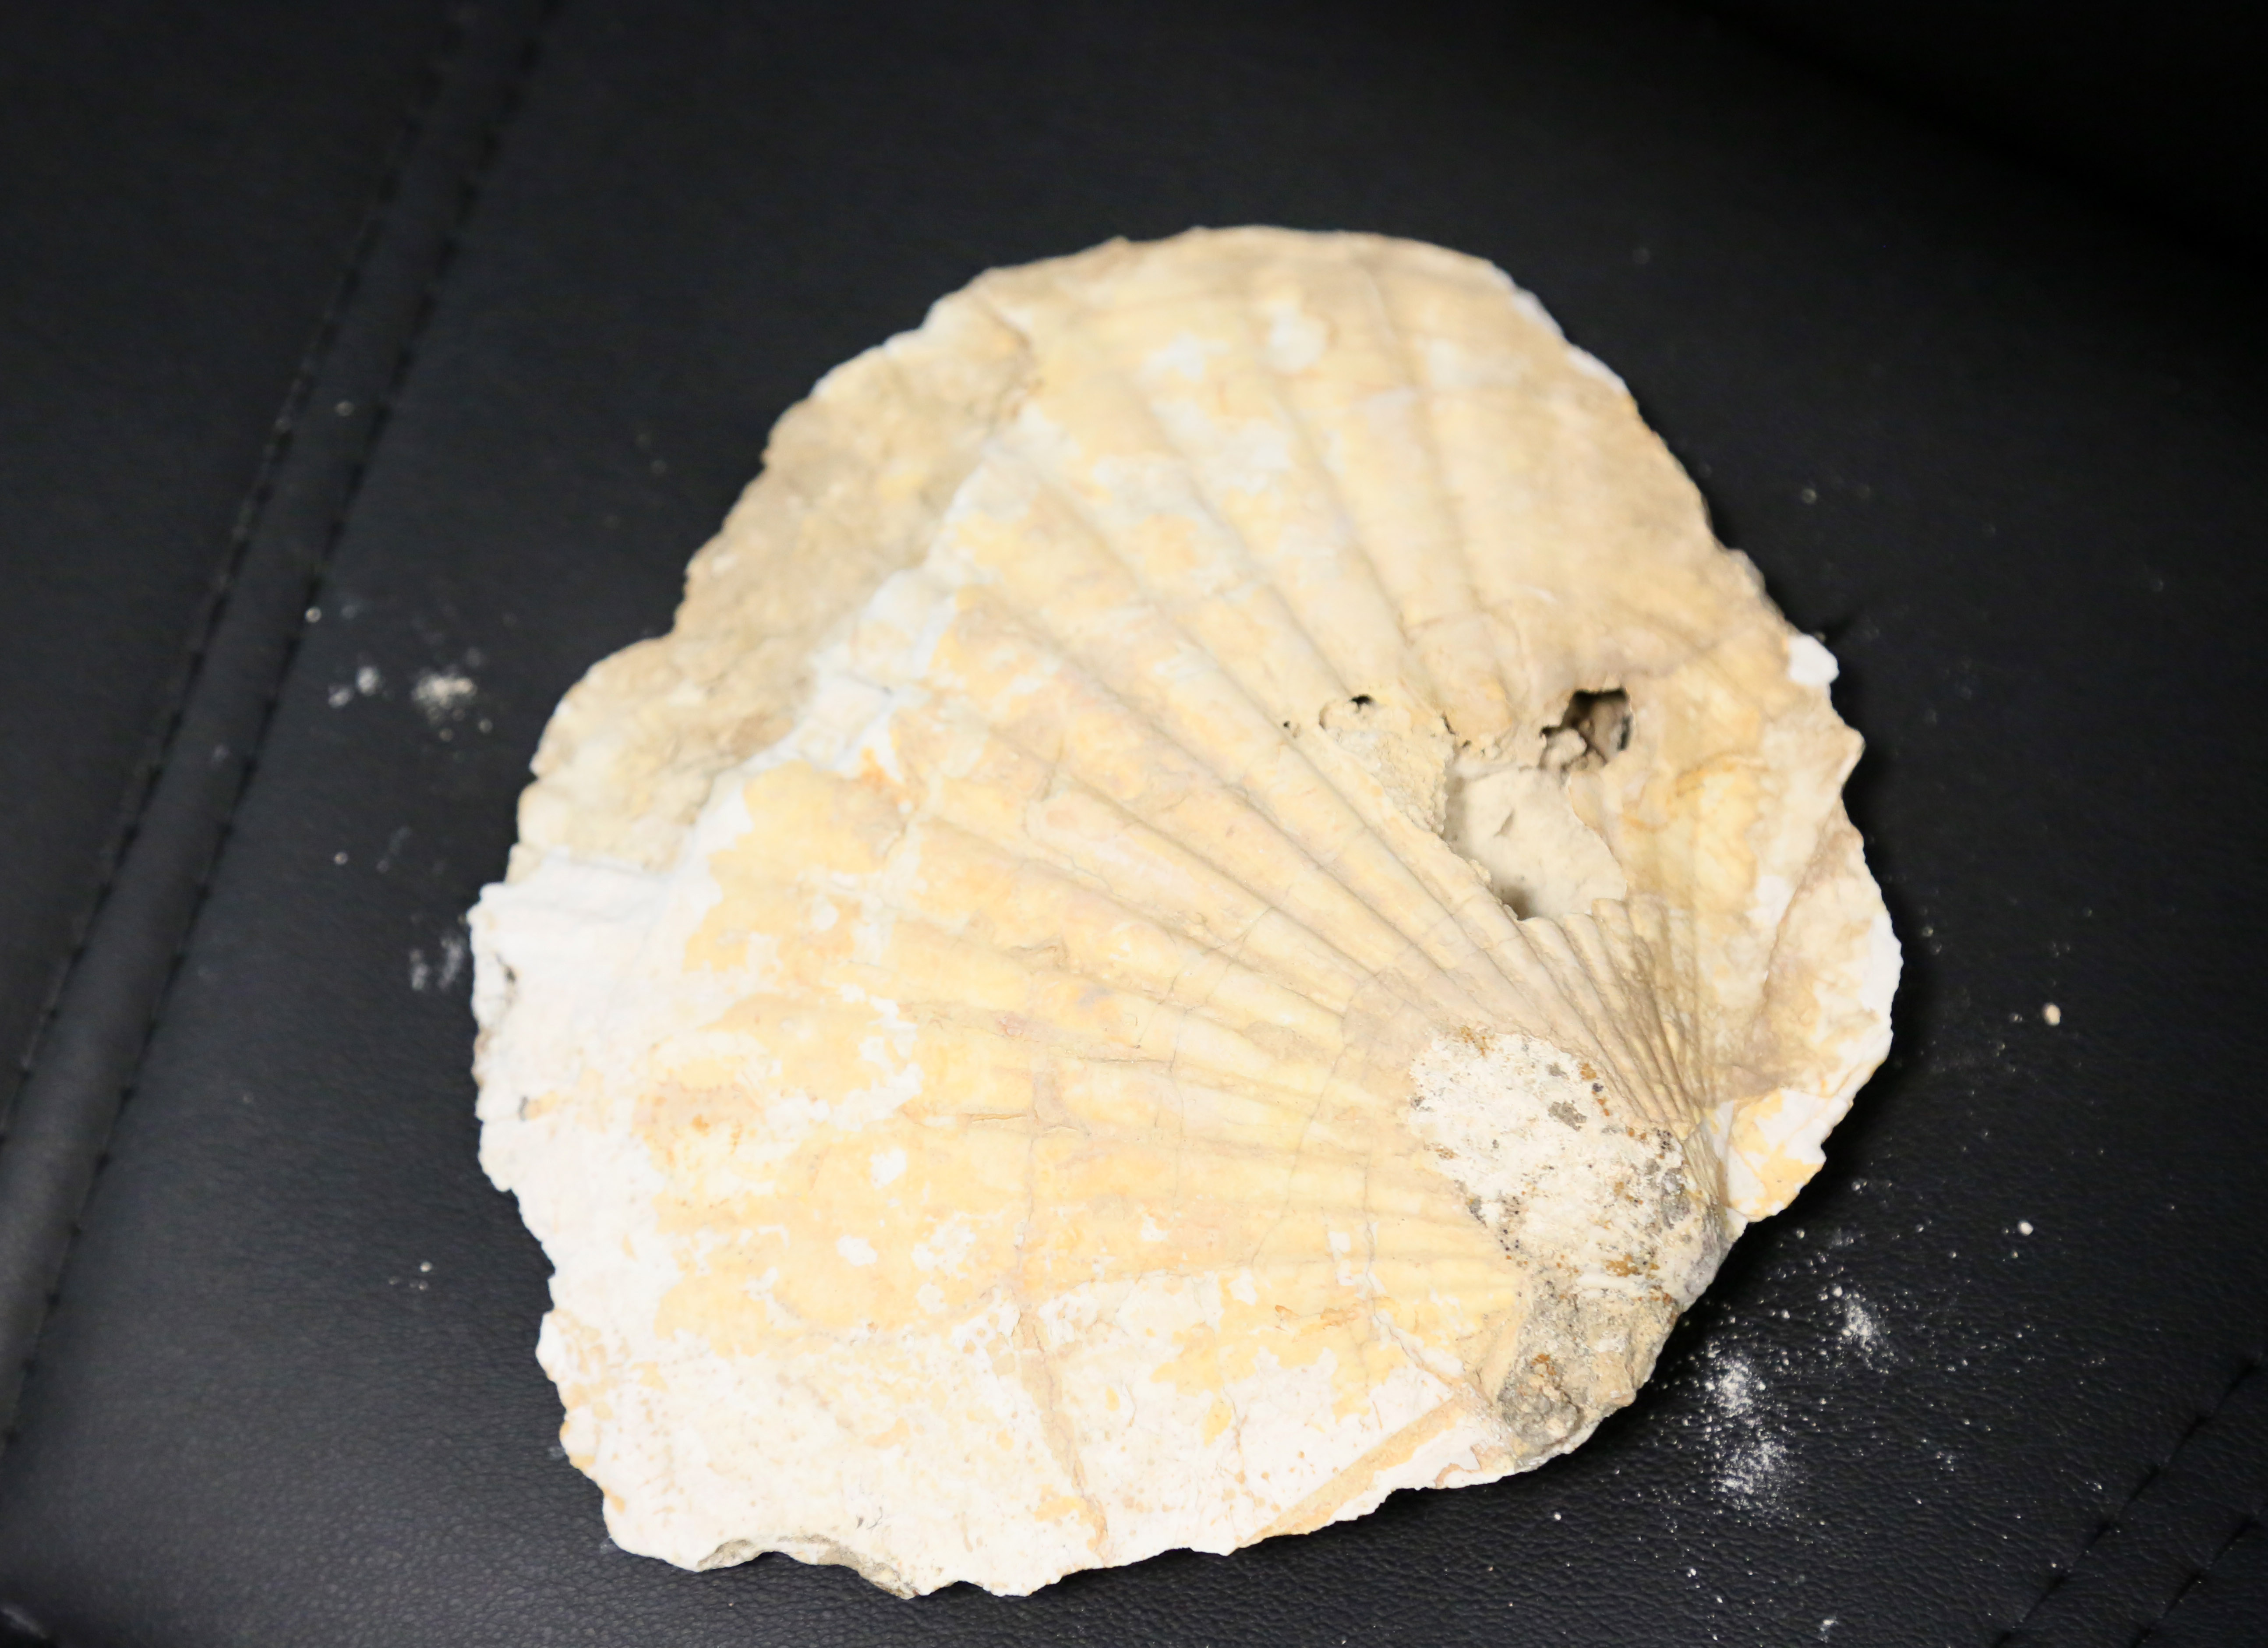 orta-toroslarda-23-milyon-yillik-deniz-canlilarina-ait-fosiller-bulundu-1176-dhaphoto2.jpg